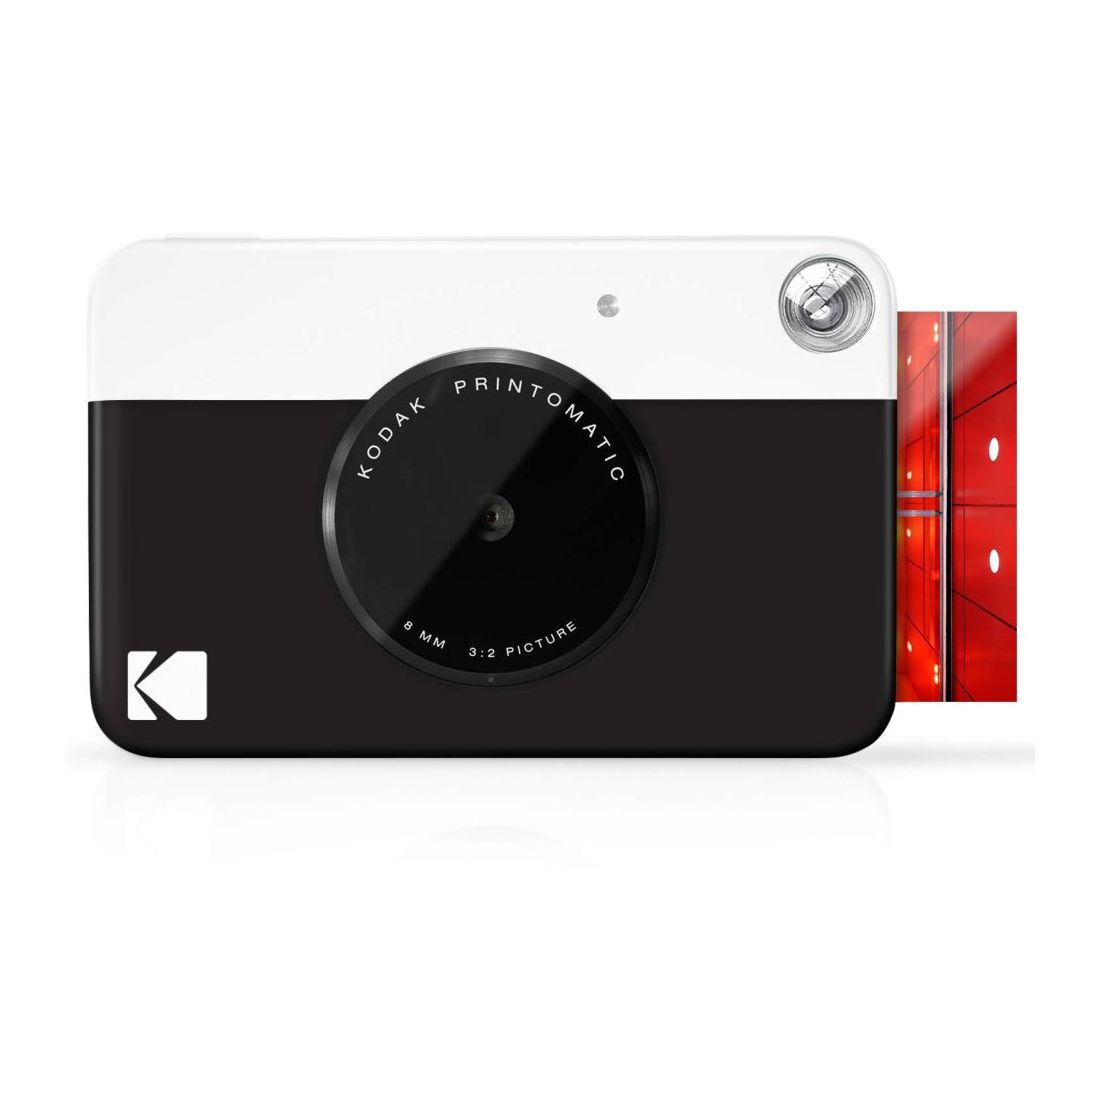 كاميرا Printomatic الرقمية الفورية من كوداك باللون الأسود